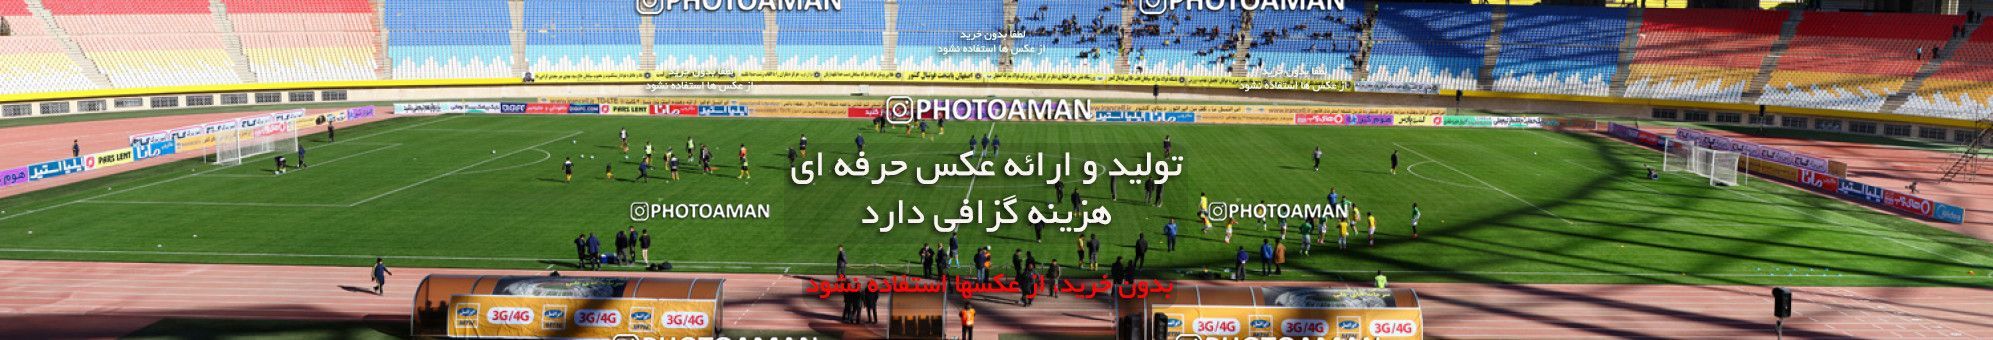 612626, Isfahan, [*parameter:4*], لیگ برتر فوتبال ایران، Persian Gulf Cup، Week 13، First Leg، Sepahan 4 v 1 Saba on 2016/12/09 at Naghsh-e Jahan Stadium